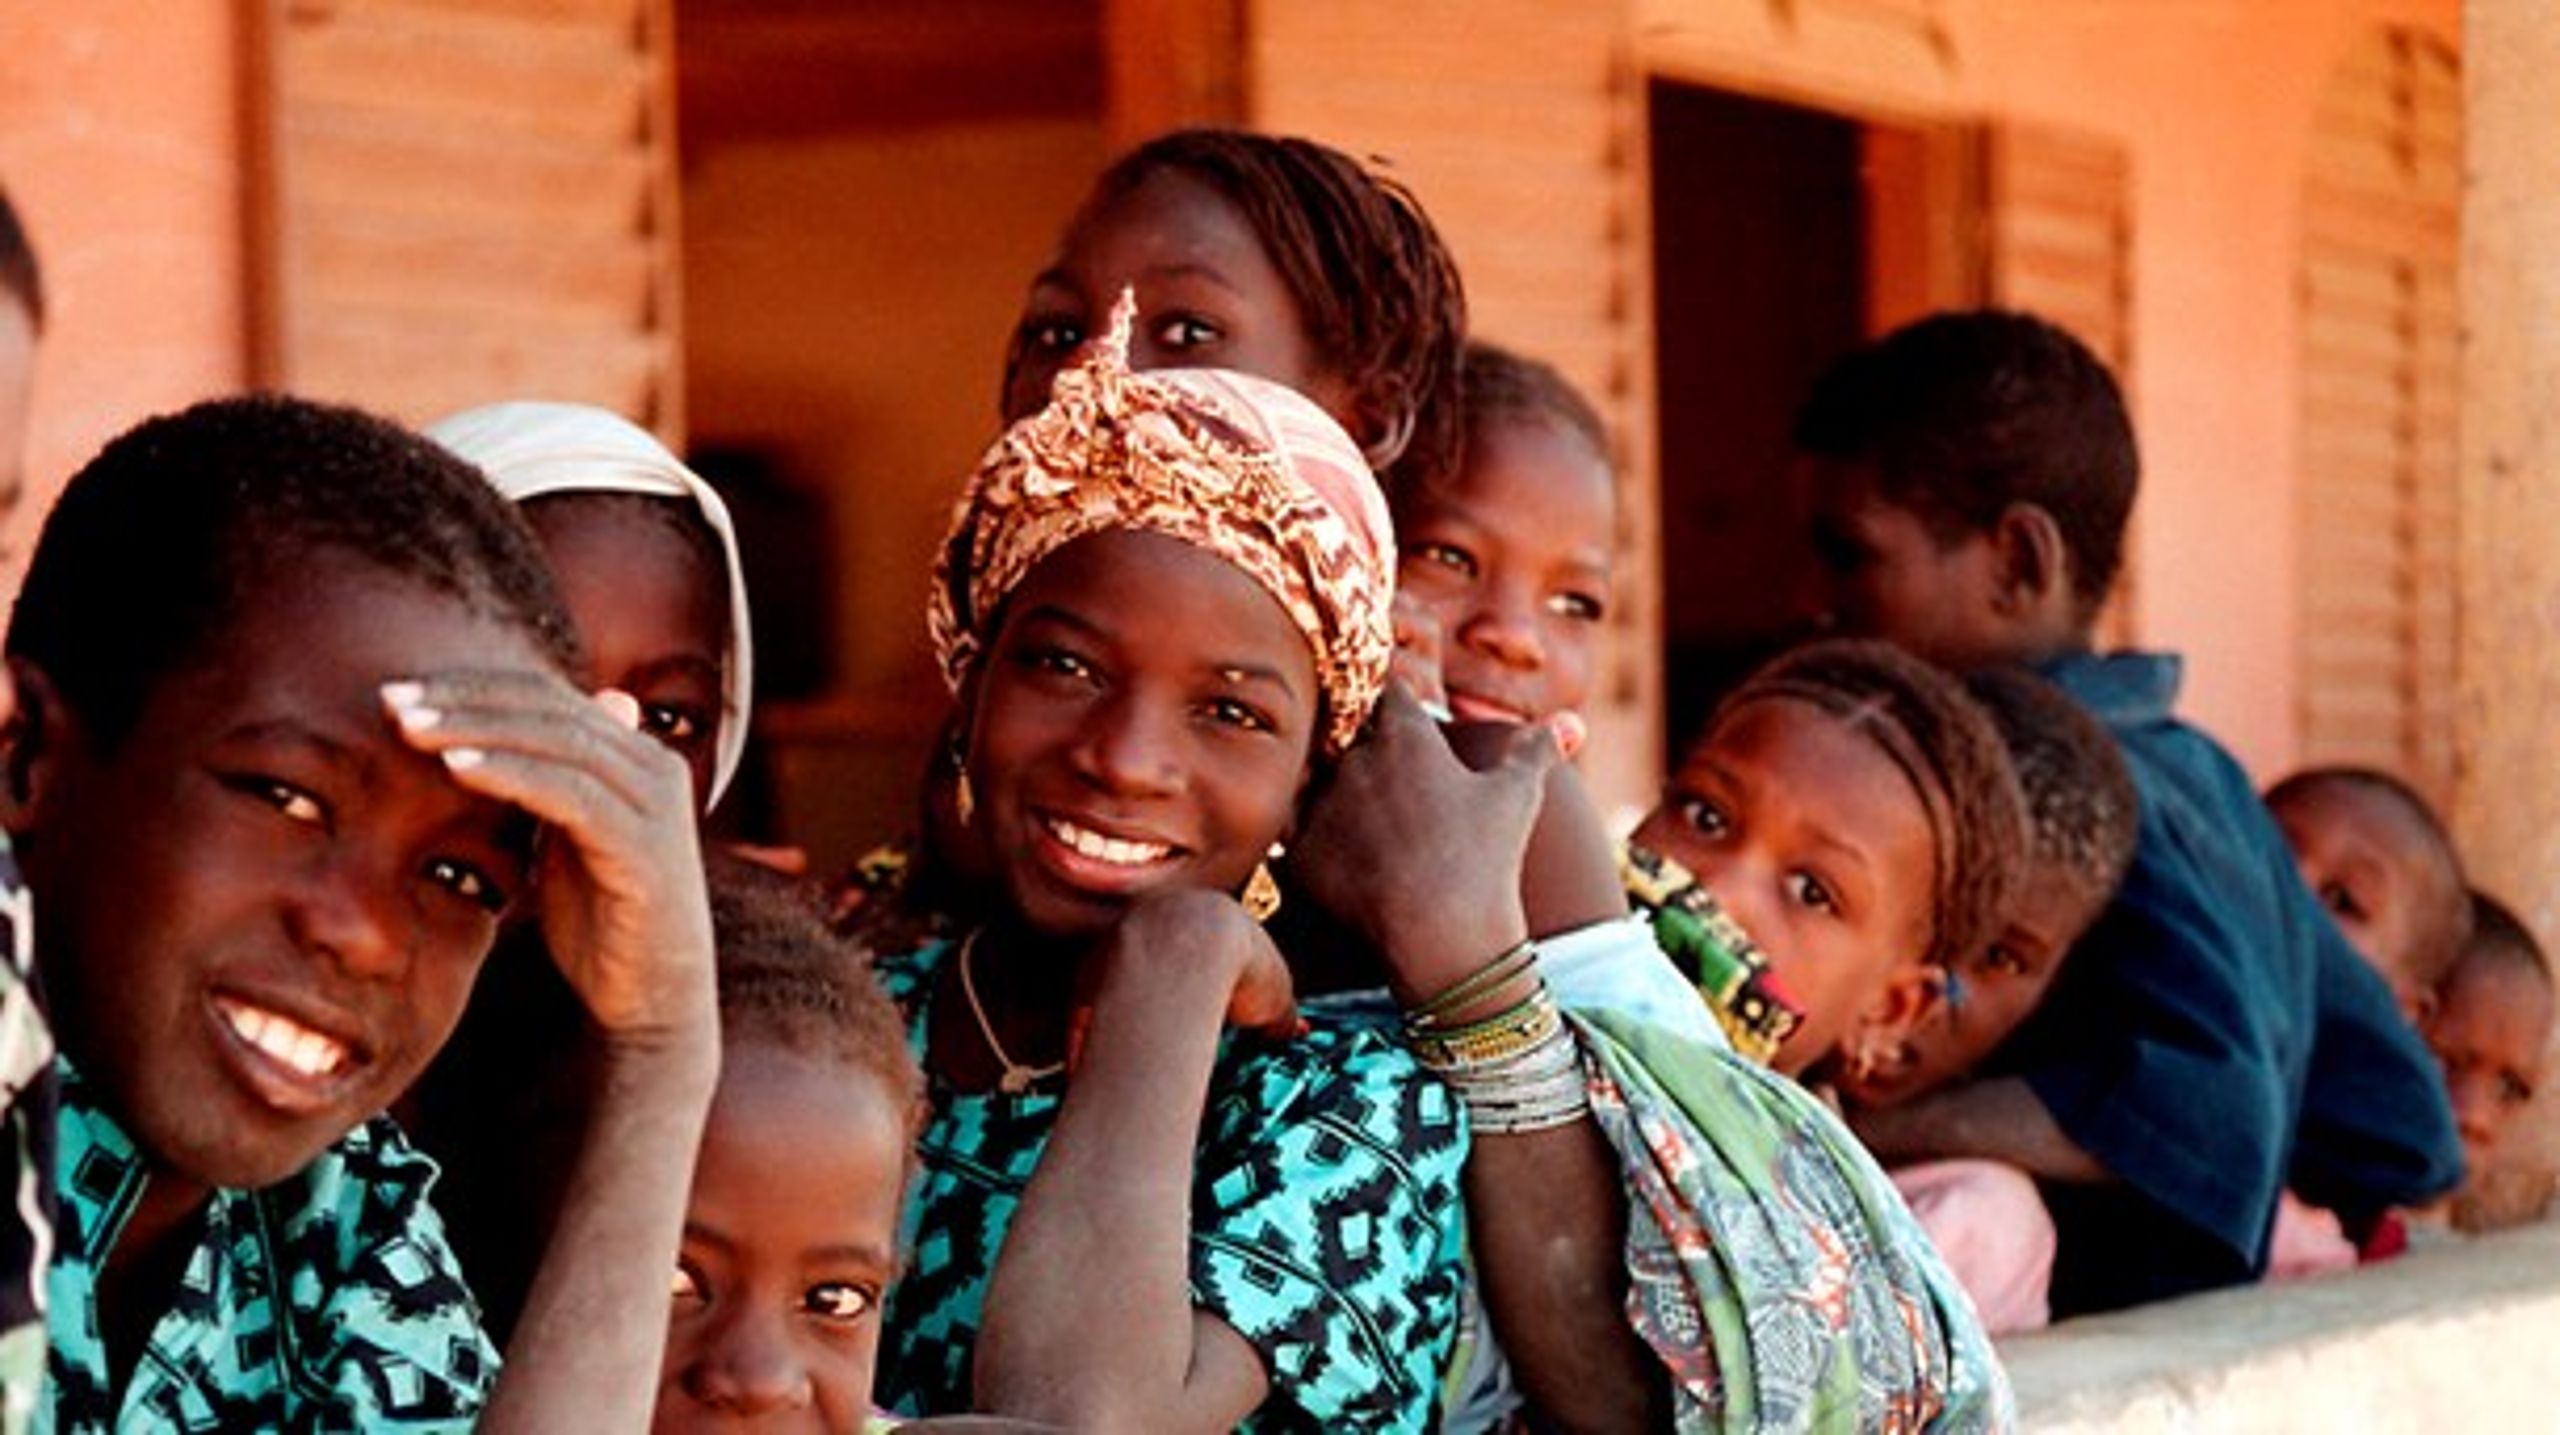 Udbredelsen af solceller i Mali har betydning i kampen mod både analfabetisme og børnedødelighed, skriver Sten Gade.<br>